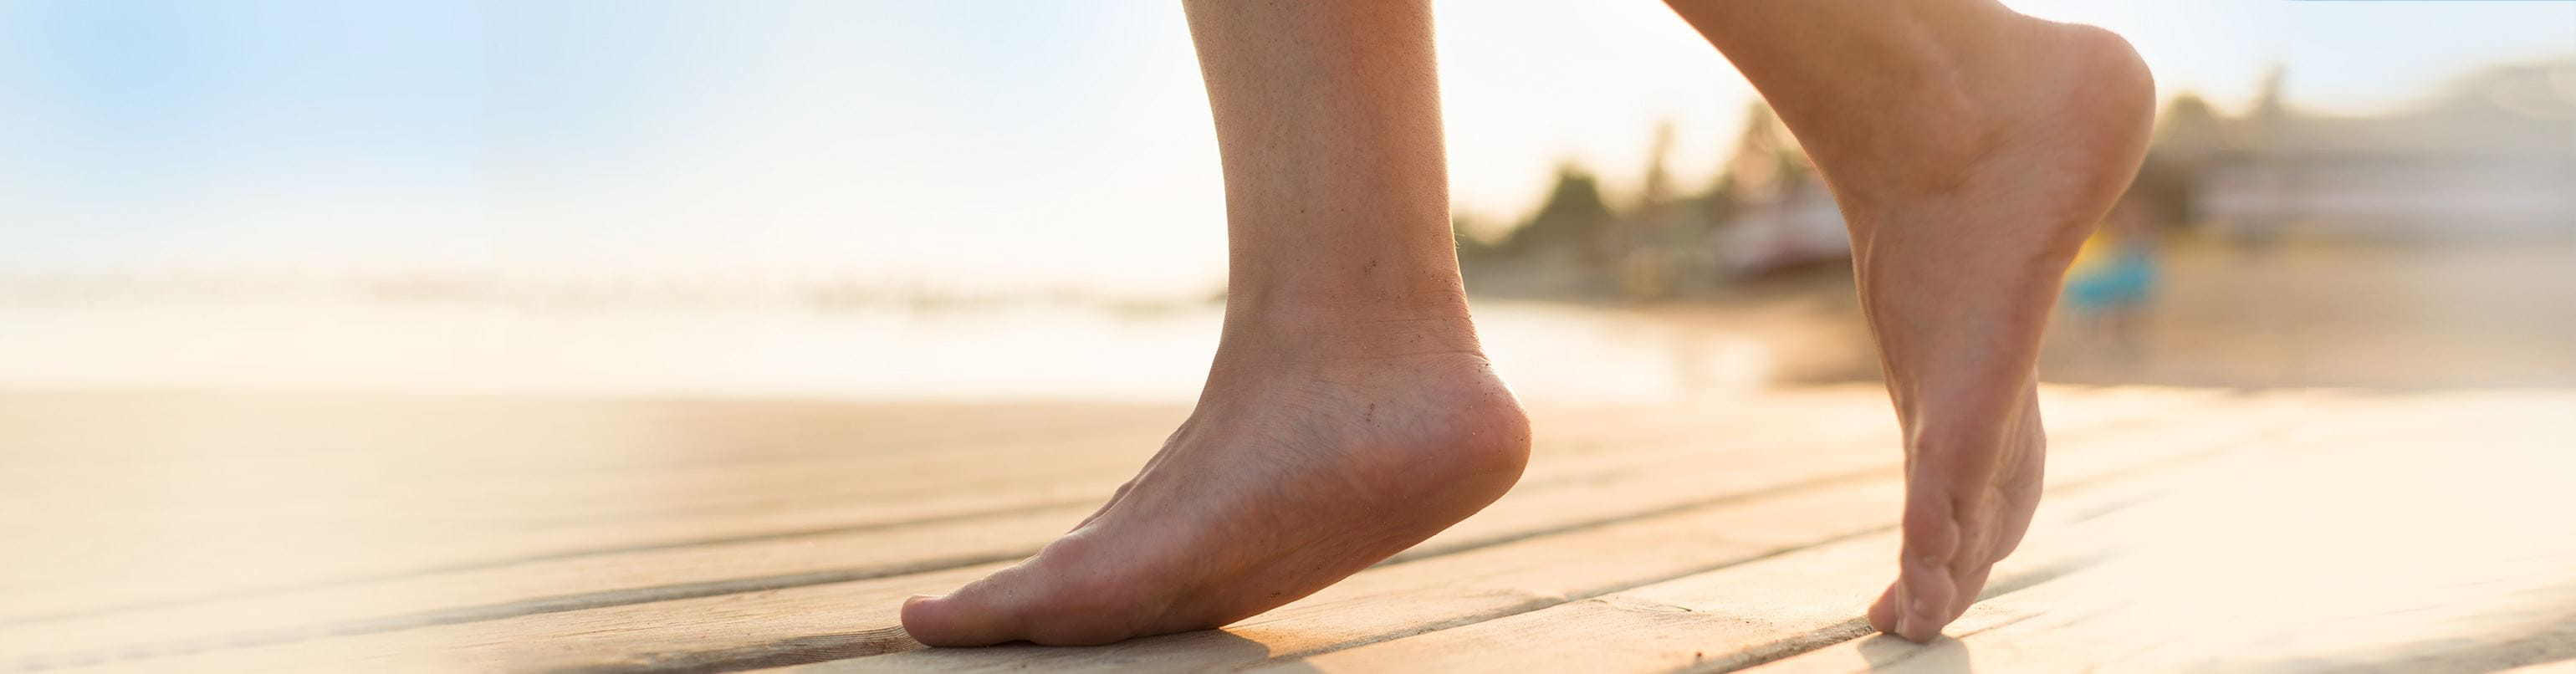 5 Easy Ways To Fix Post-Summer Feet | British Vogue